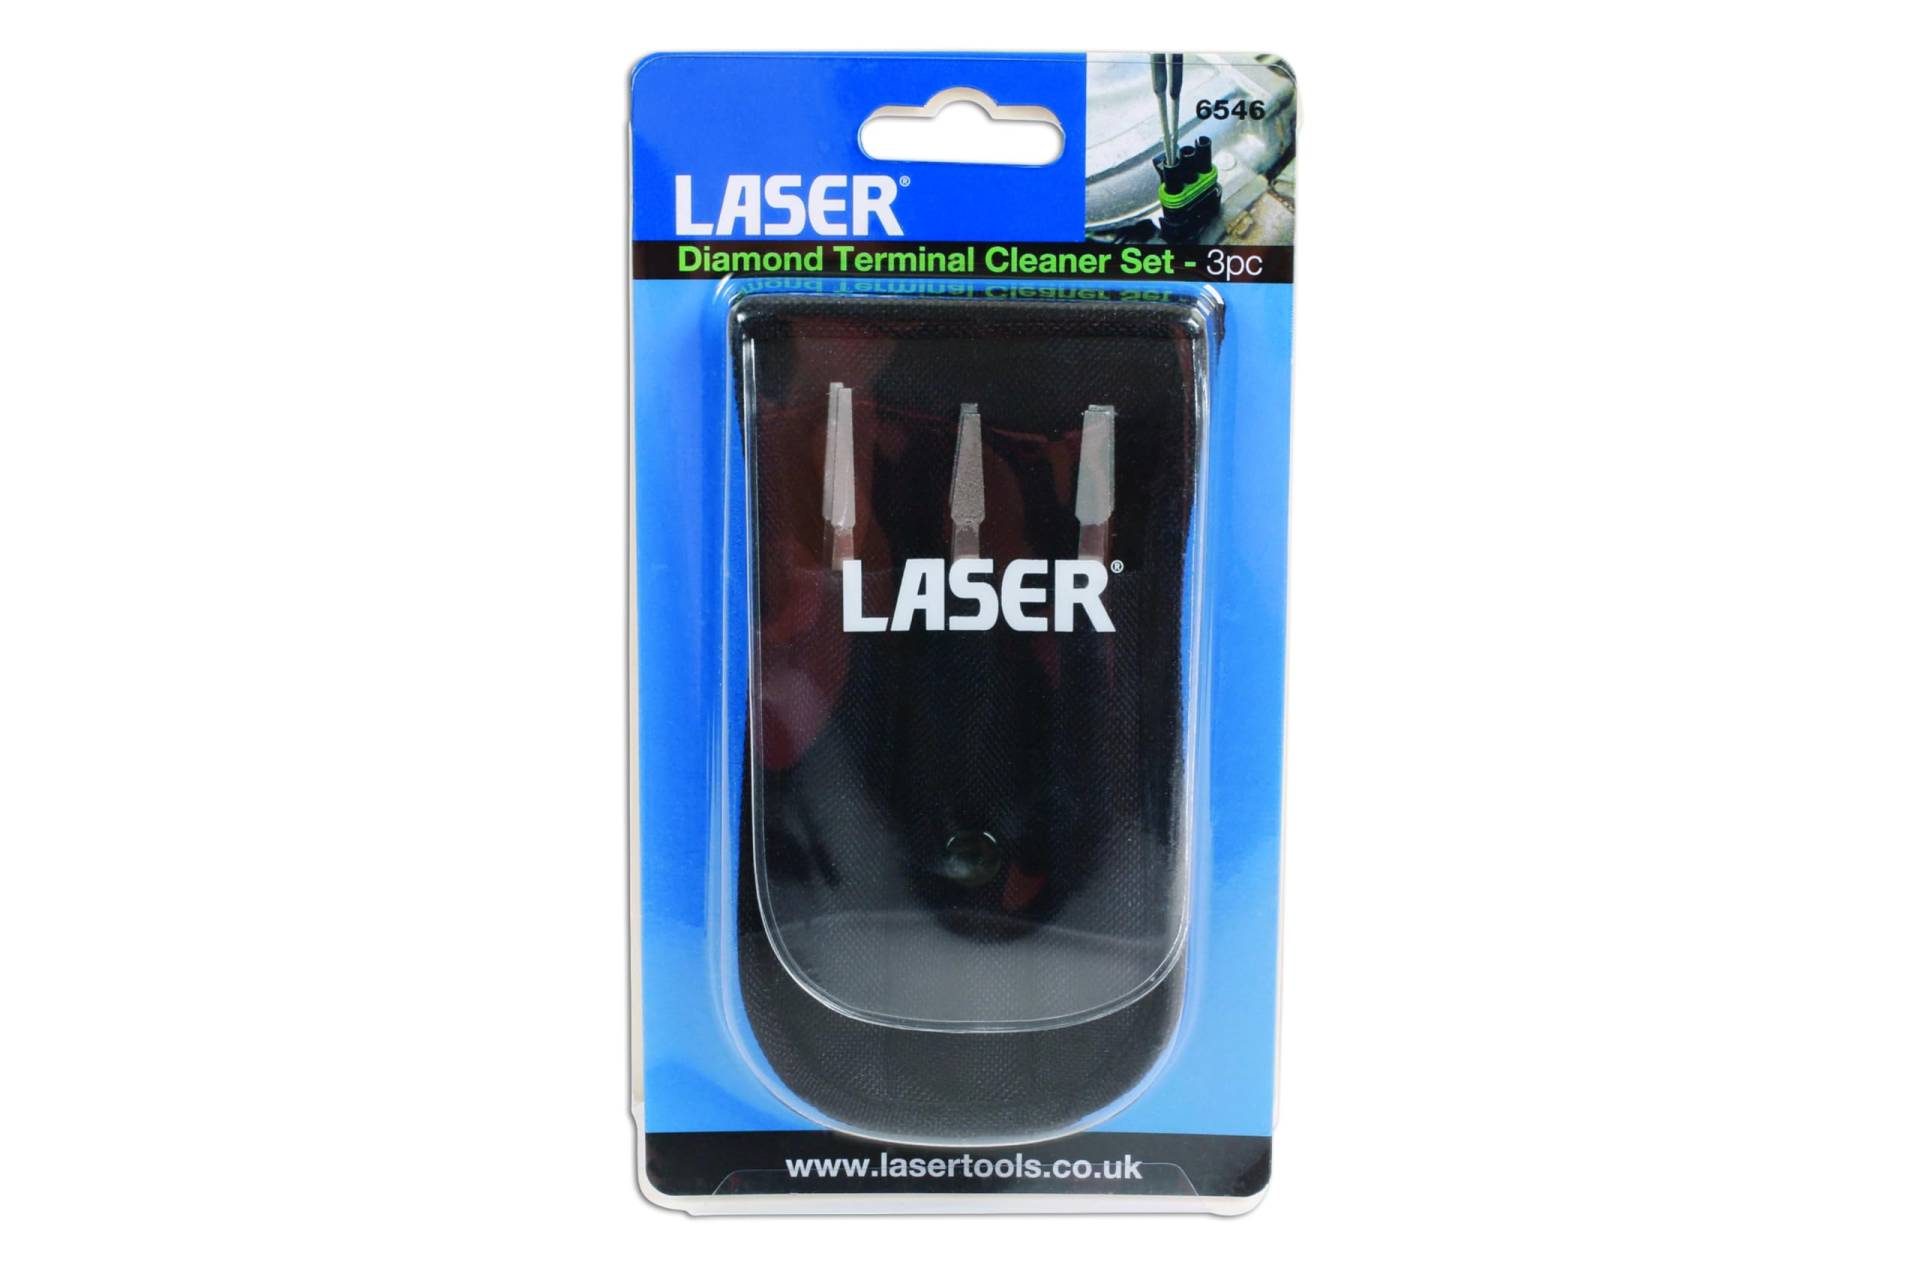 Laser 6546 Diamant Terminal sauberer, Set von 3 von Laser